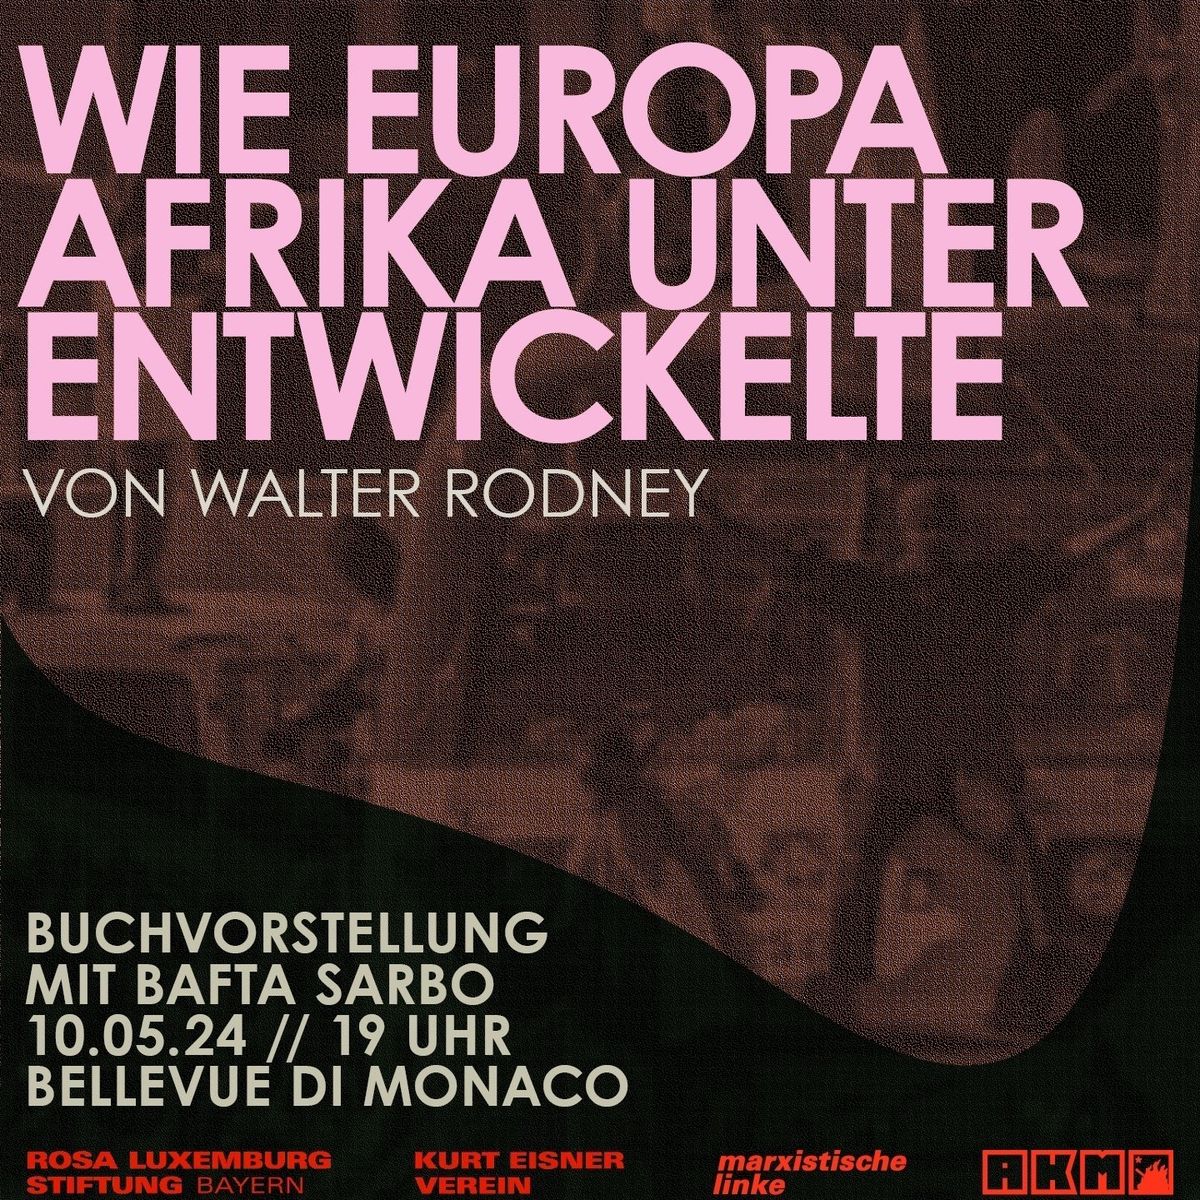 \u00abWie Europa Afrika unterentwickelte\u00bb  - Buchvorstellung und Diskussion mit Bafta Sarbo 